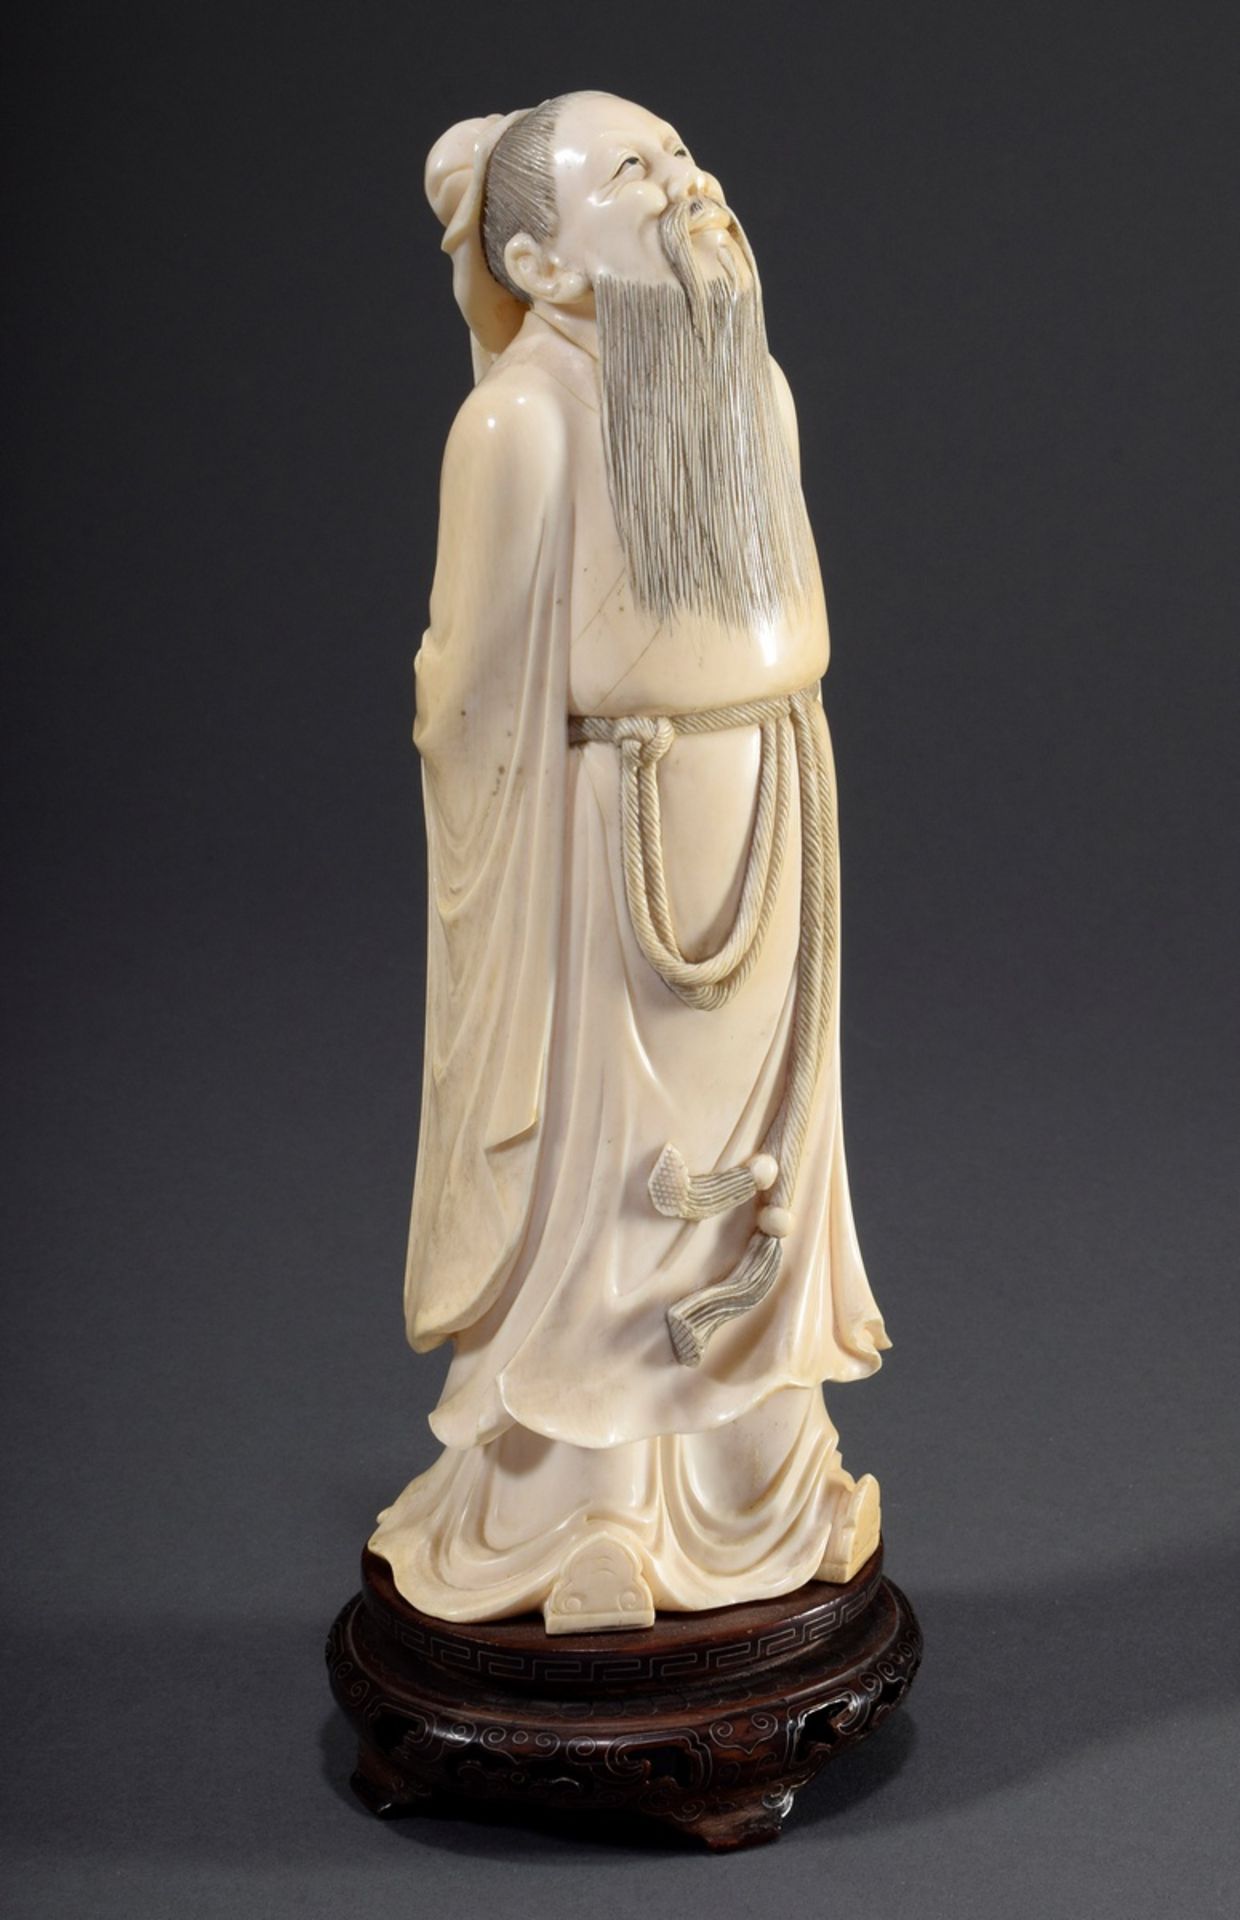 Chinesische Elfenbein Schnitzerei "Konfuzius, de | Chinese ivory carving "Confucius, looking up to